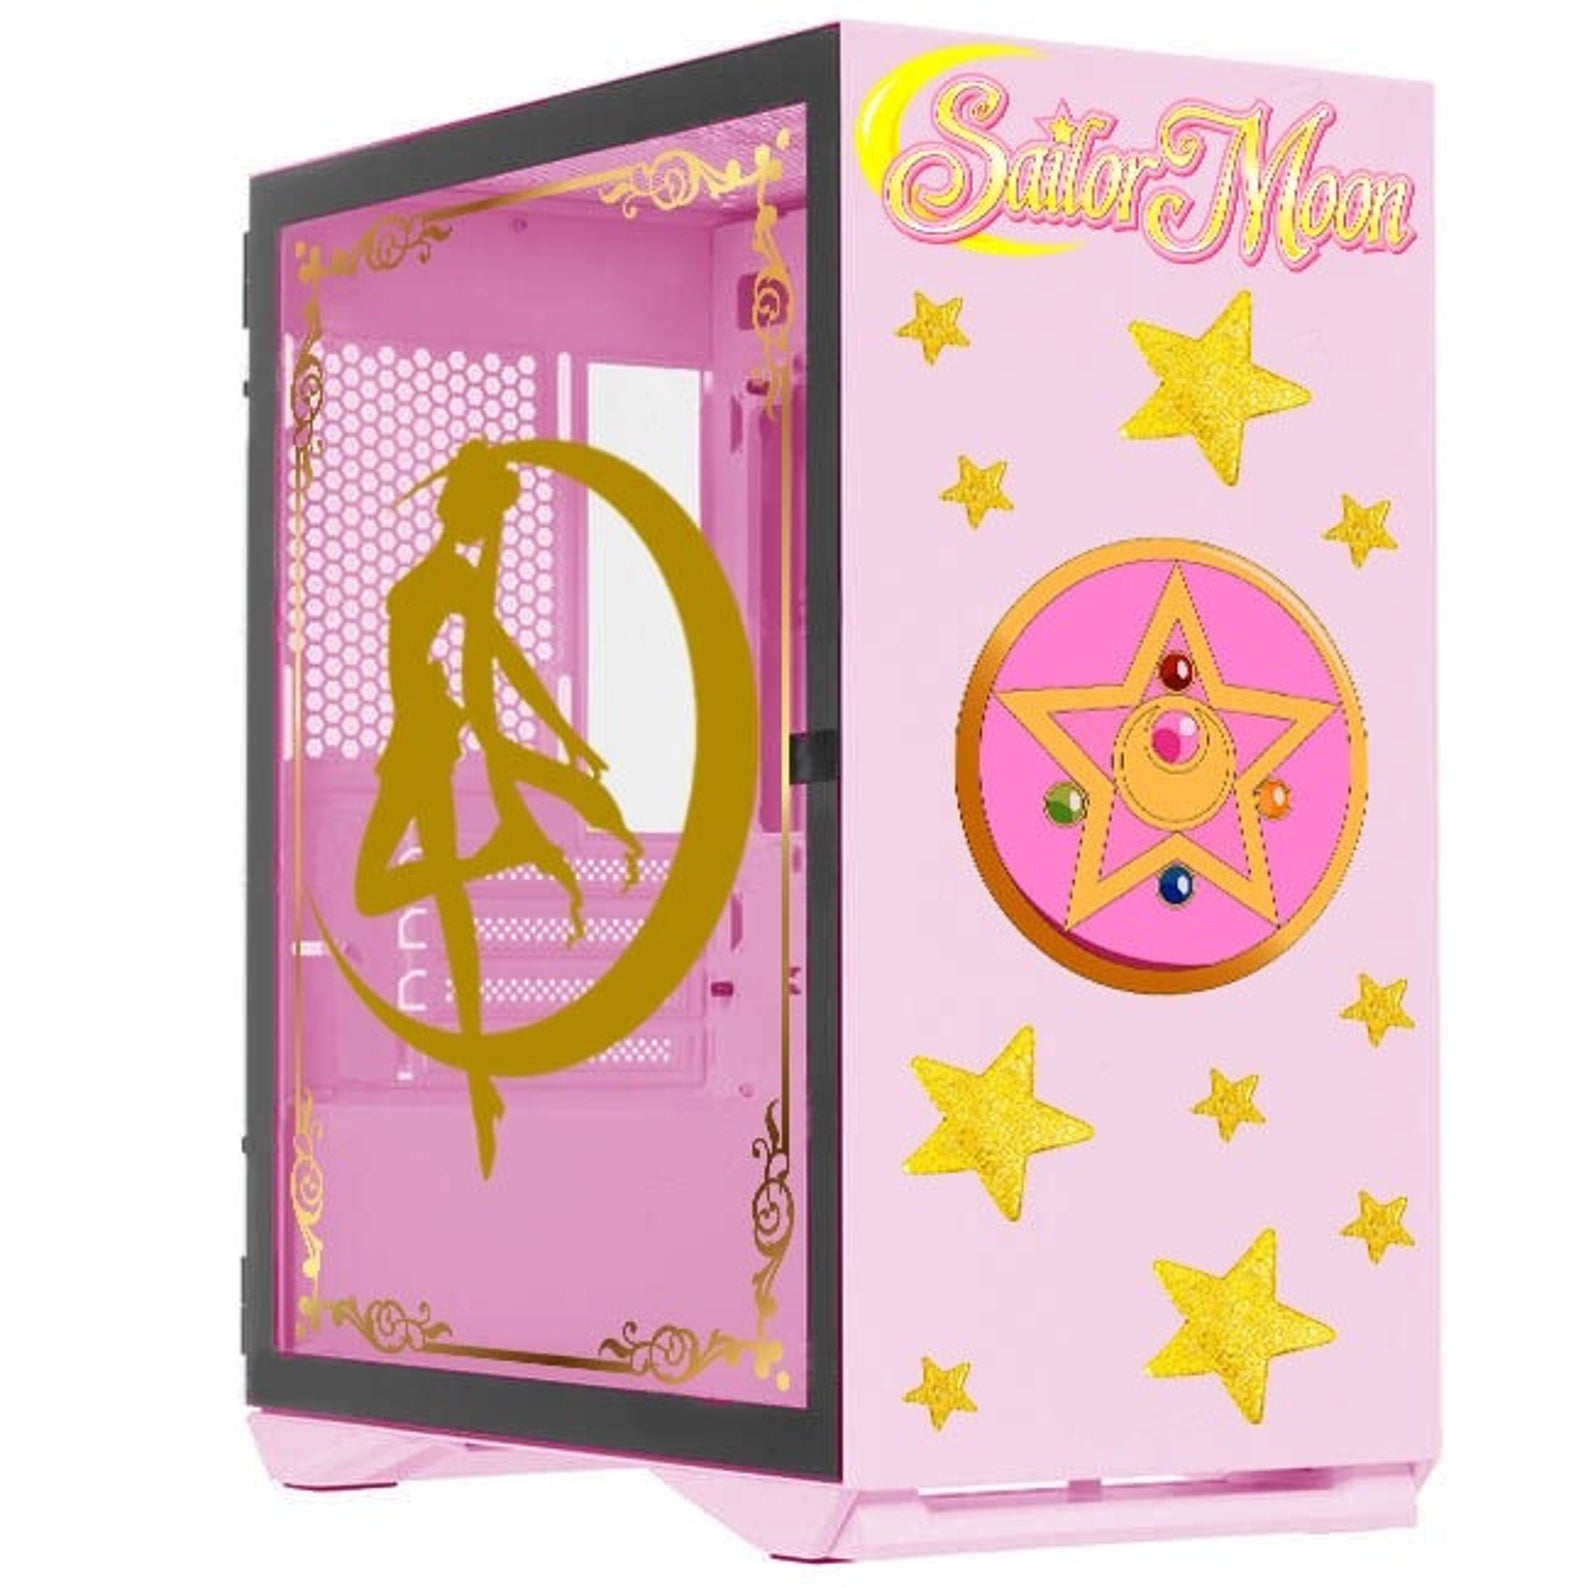 Sailor Moon PC Case - Cute Gaming Decor